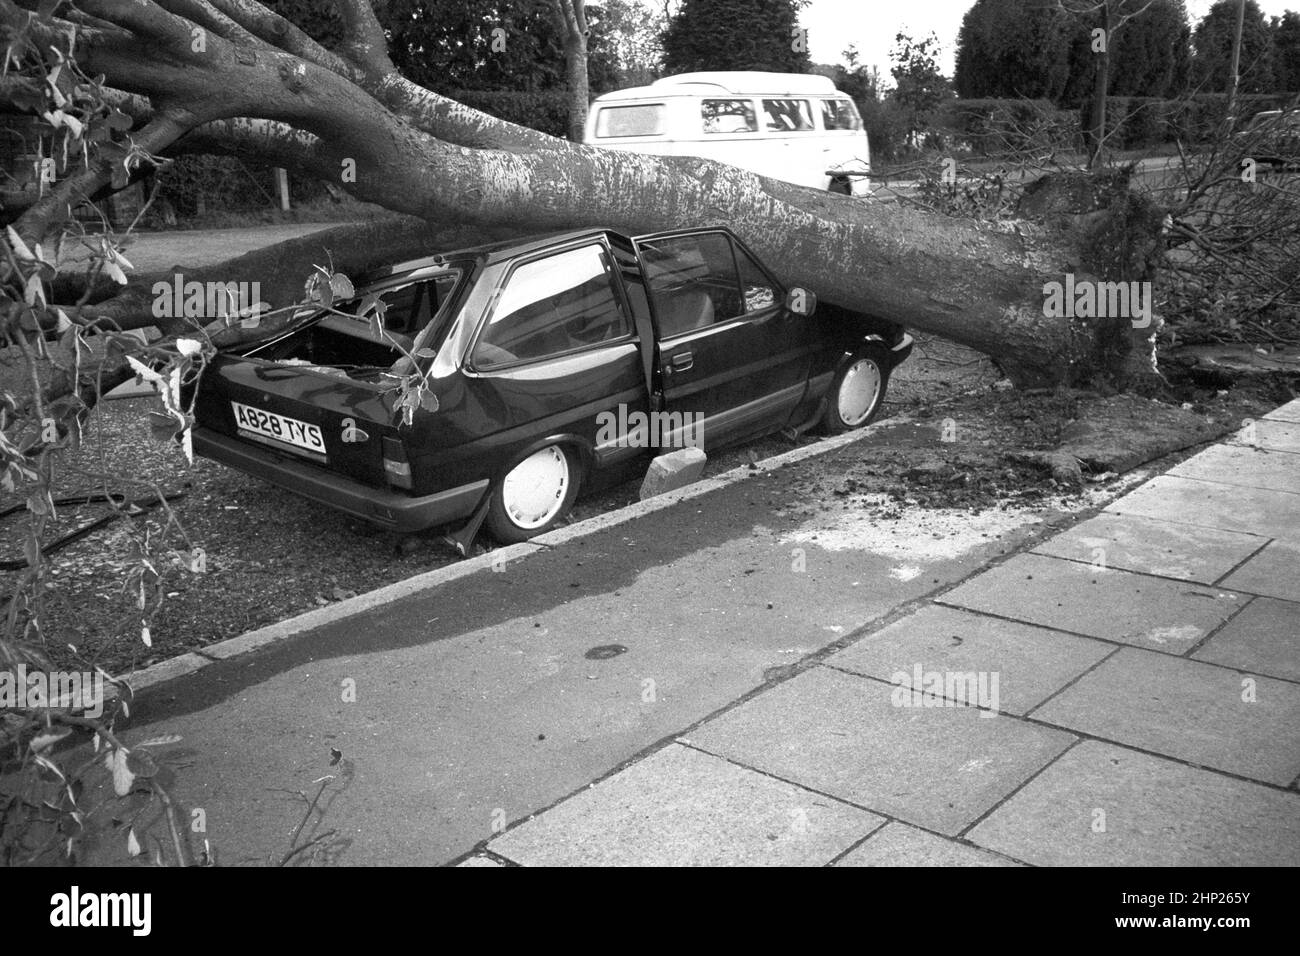 Foto di archivio datata 16/10/1987 di una macchina schiacciata da un albero cadente dopo la Grande tempesta del 1987. Data di emissione: Venerdì 18 febbraio 2022. Foto Stock